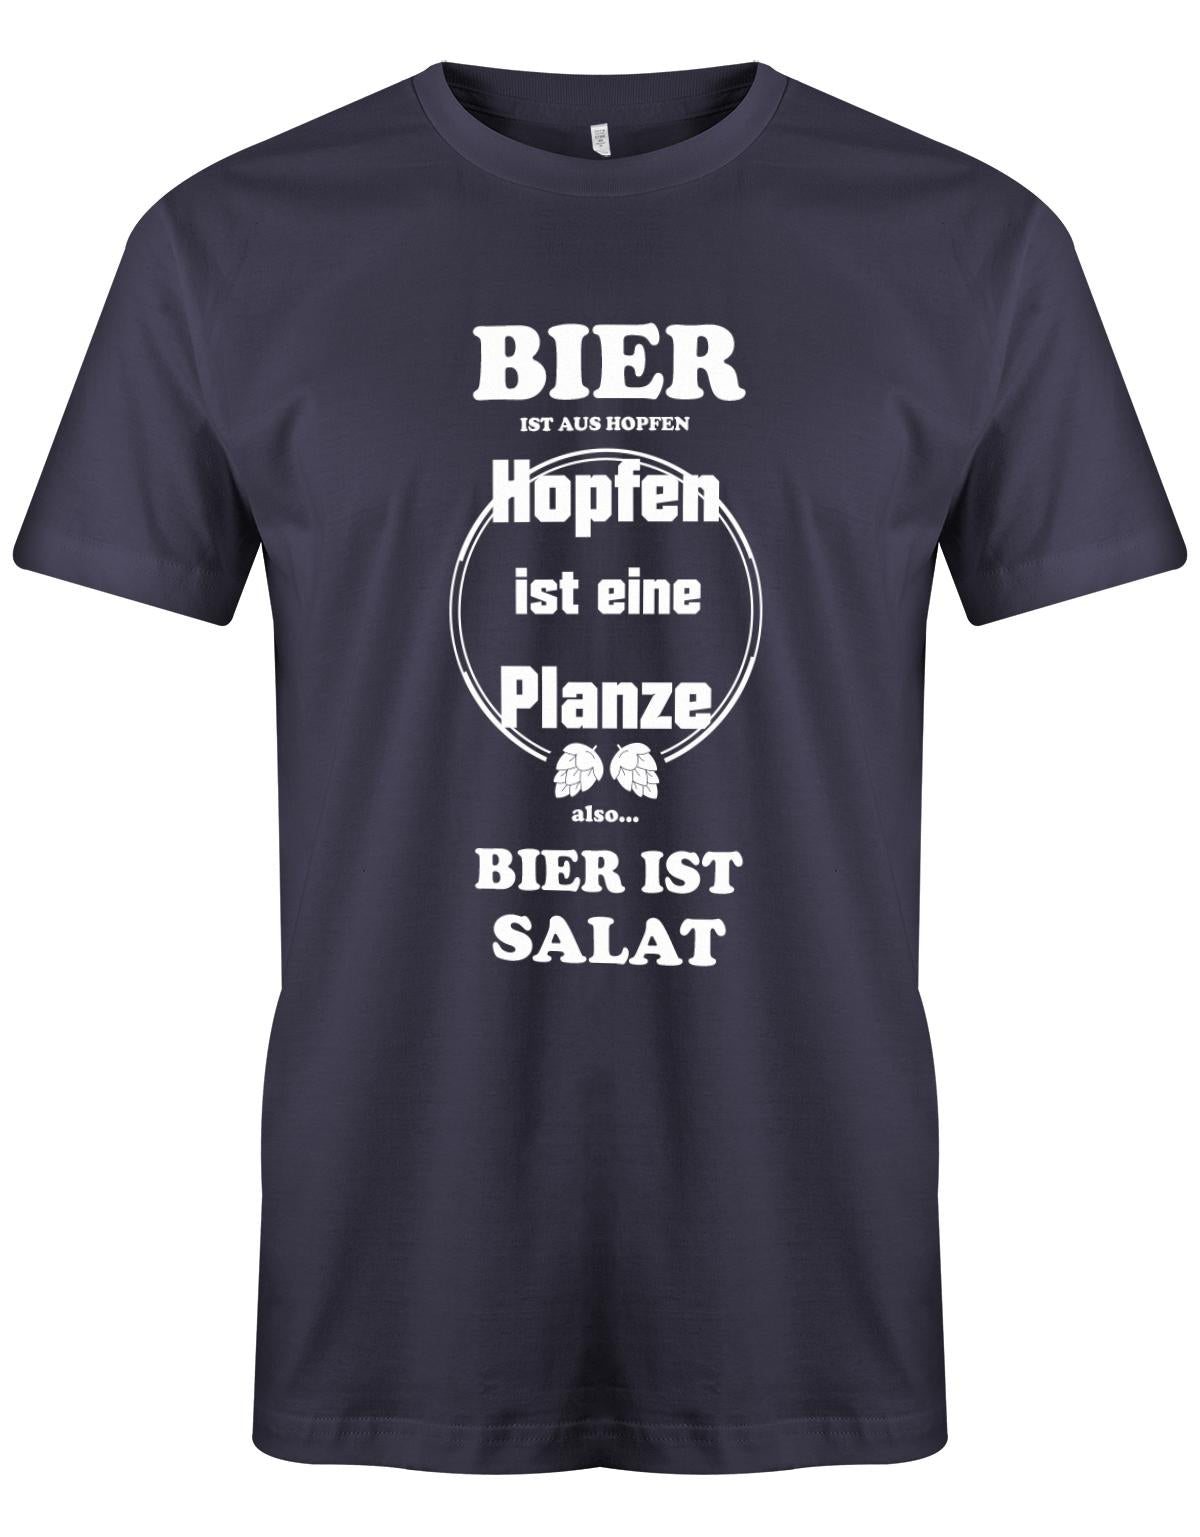 Bier-ist-aus-Hopfen-Hopfen-ist-eine-Pflanze-Bier-ist-Salat-herren-Shirt-Navy